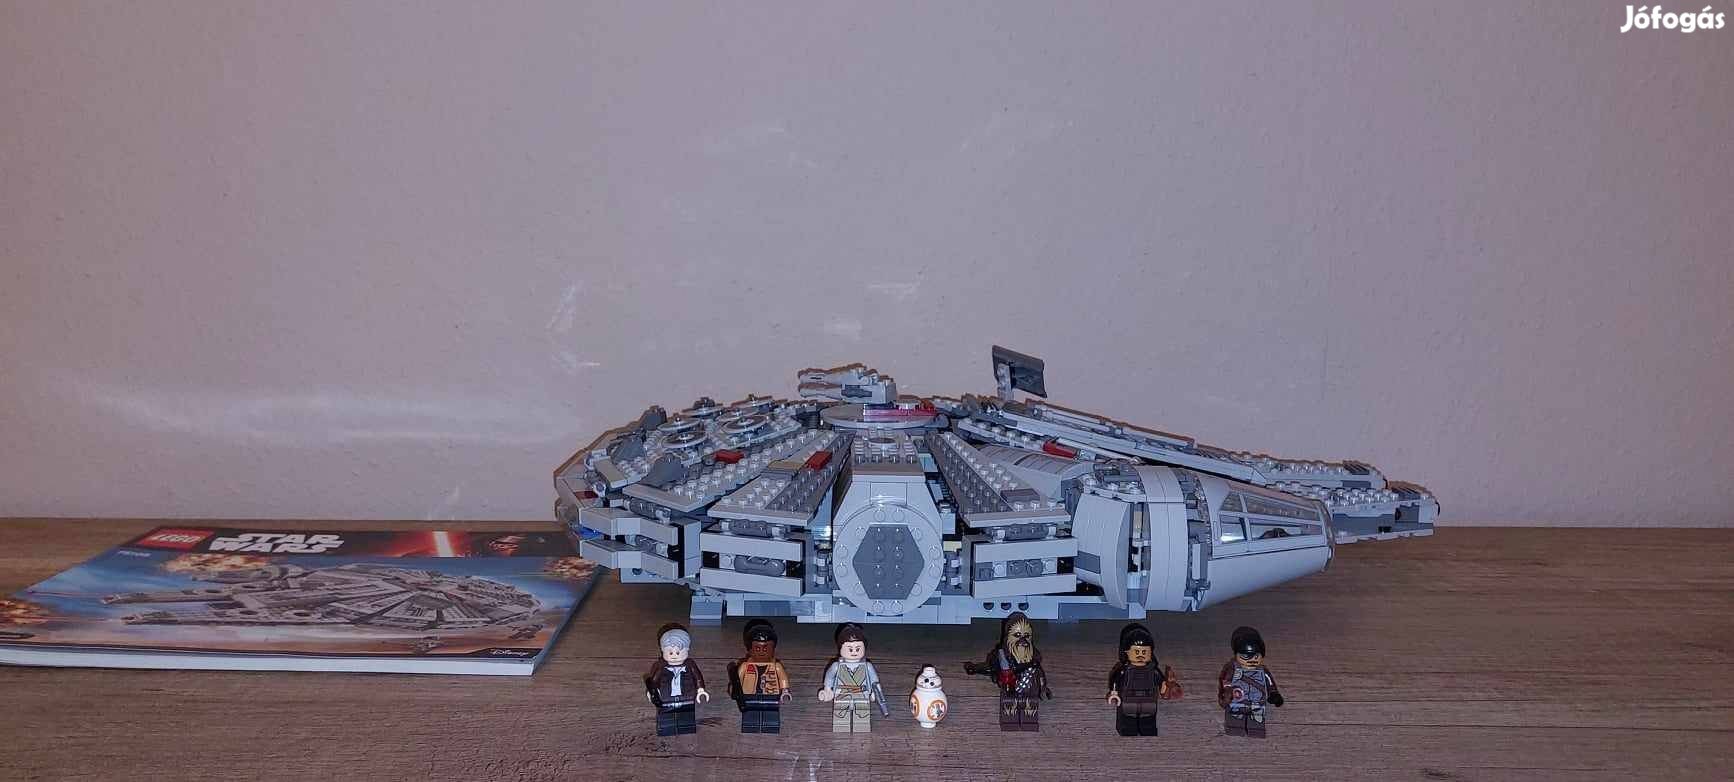 Eladó 75105, Millennium Falcon, LEGO Star Wars